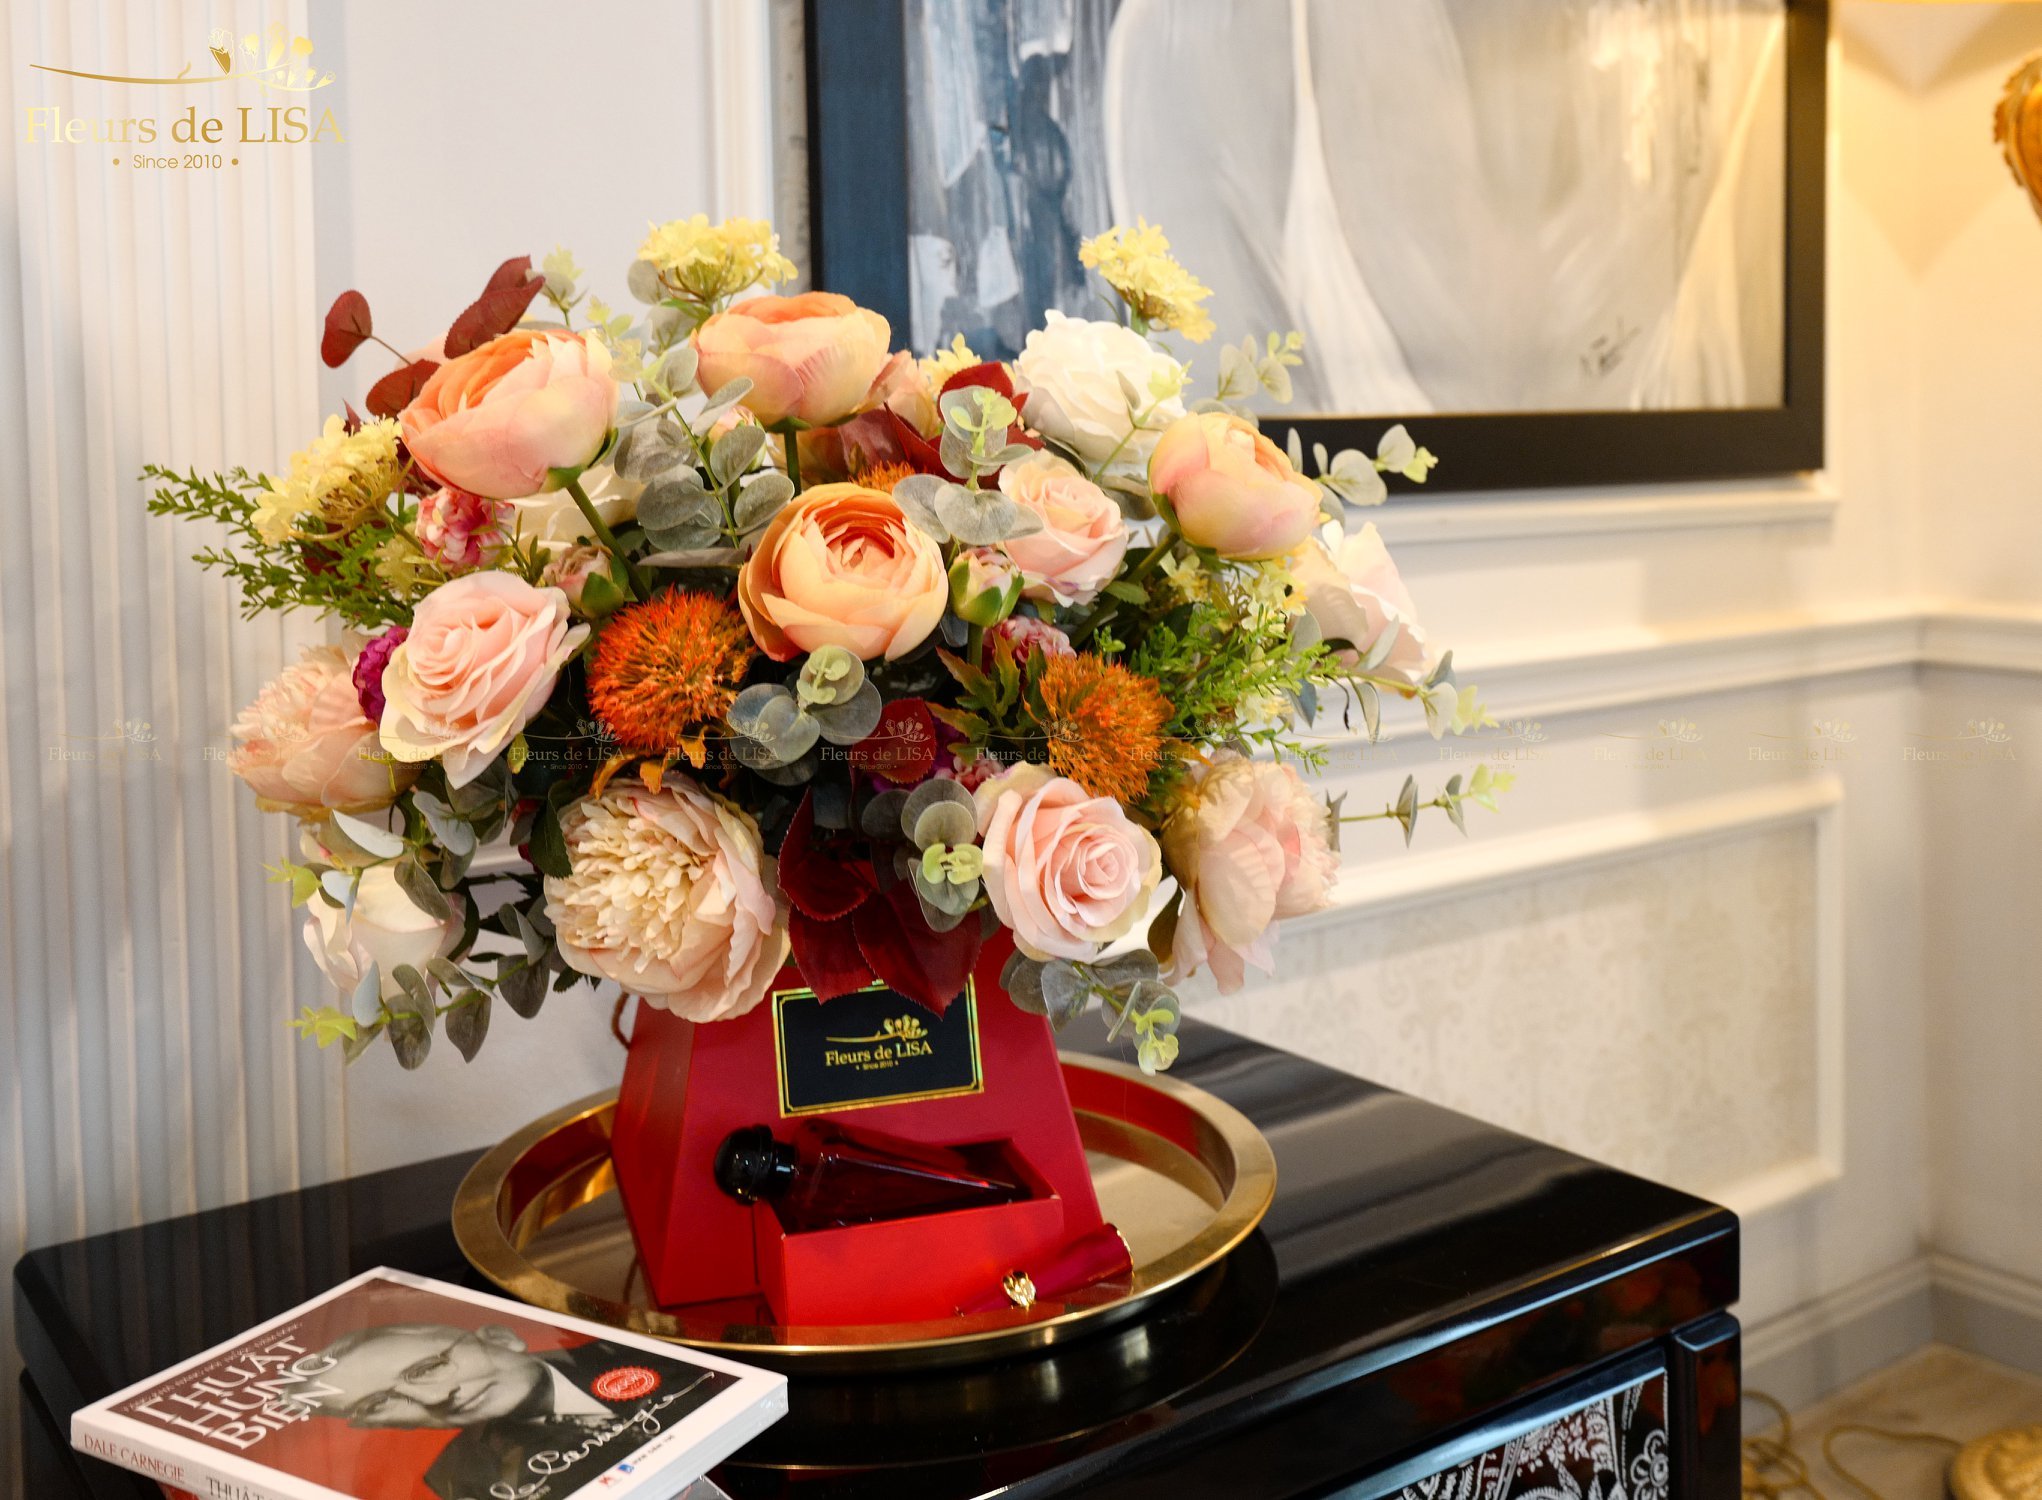 Hoa lụa Fleurs de LISA tôn lên vẻ đẹp của ngôi nhà